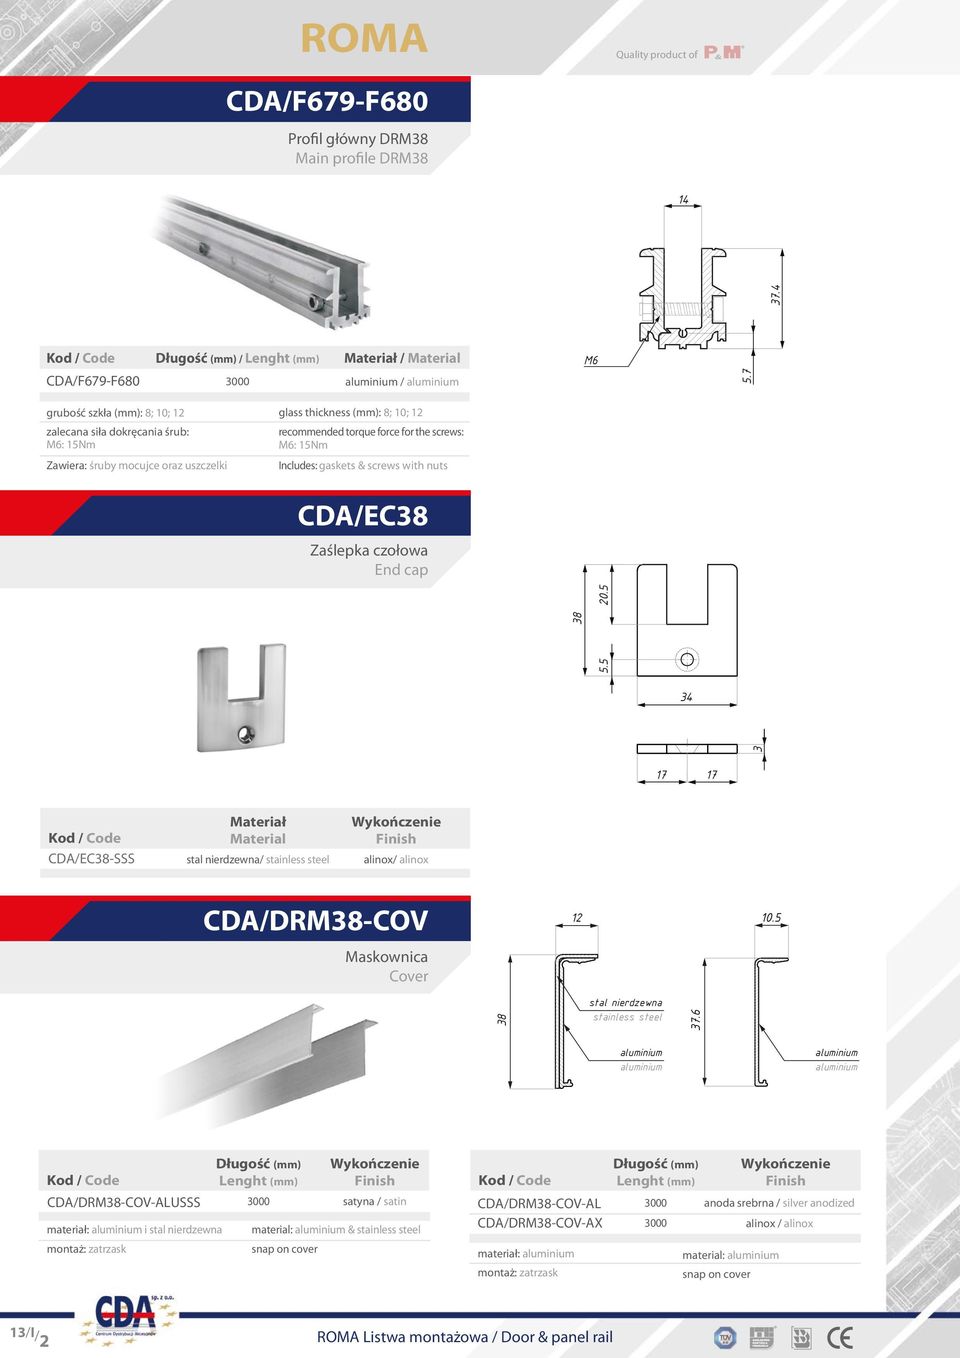 Includes: gaskets & screws with nuts CDA/EC8 Zaślepka czołowa End cap 7 7 CDA/EC8-SSS Material stal nierdzewna/ stainless steel alinox/ alinox CDA/DRM8-COV Maskownica Cover 0.